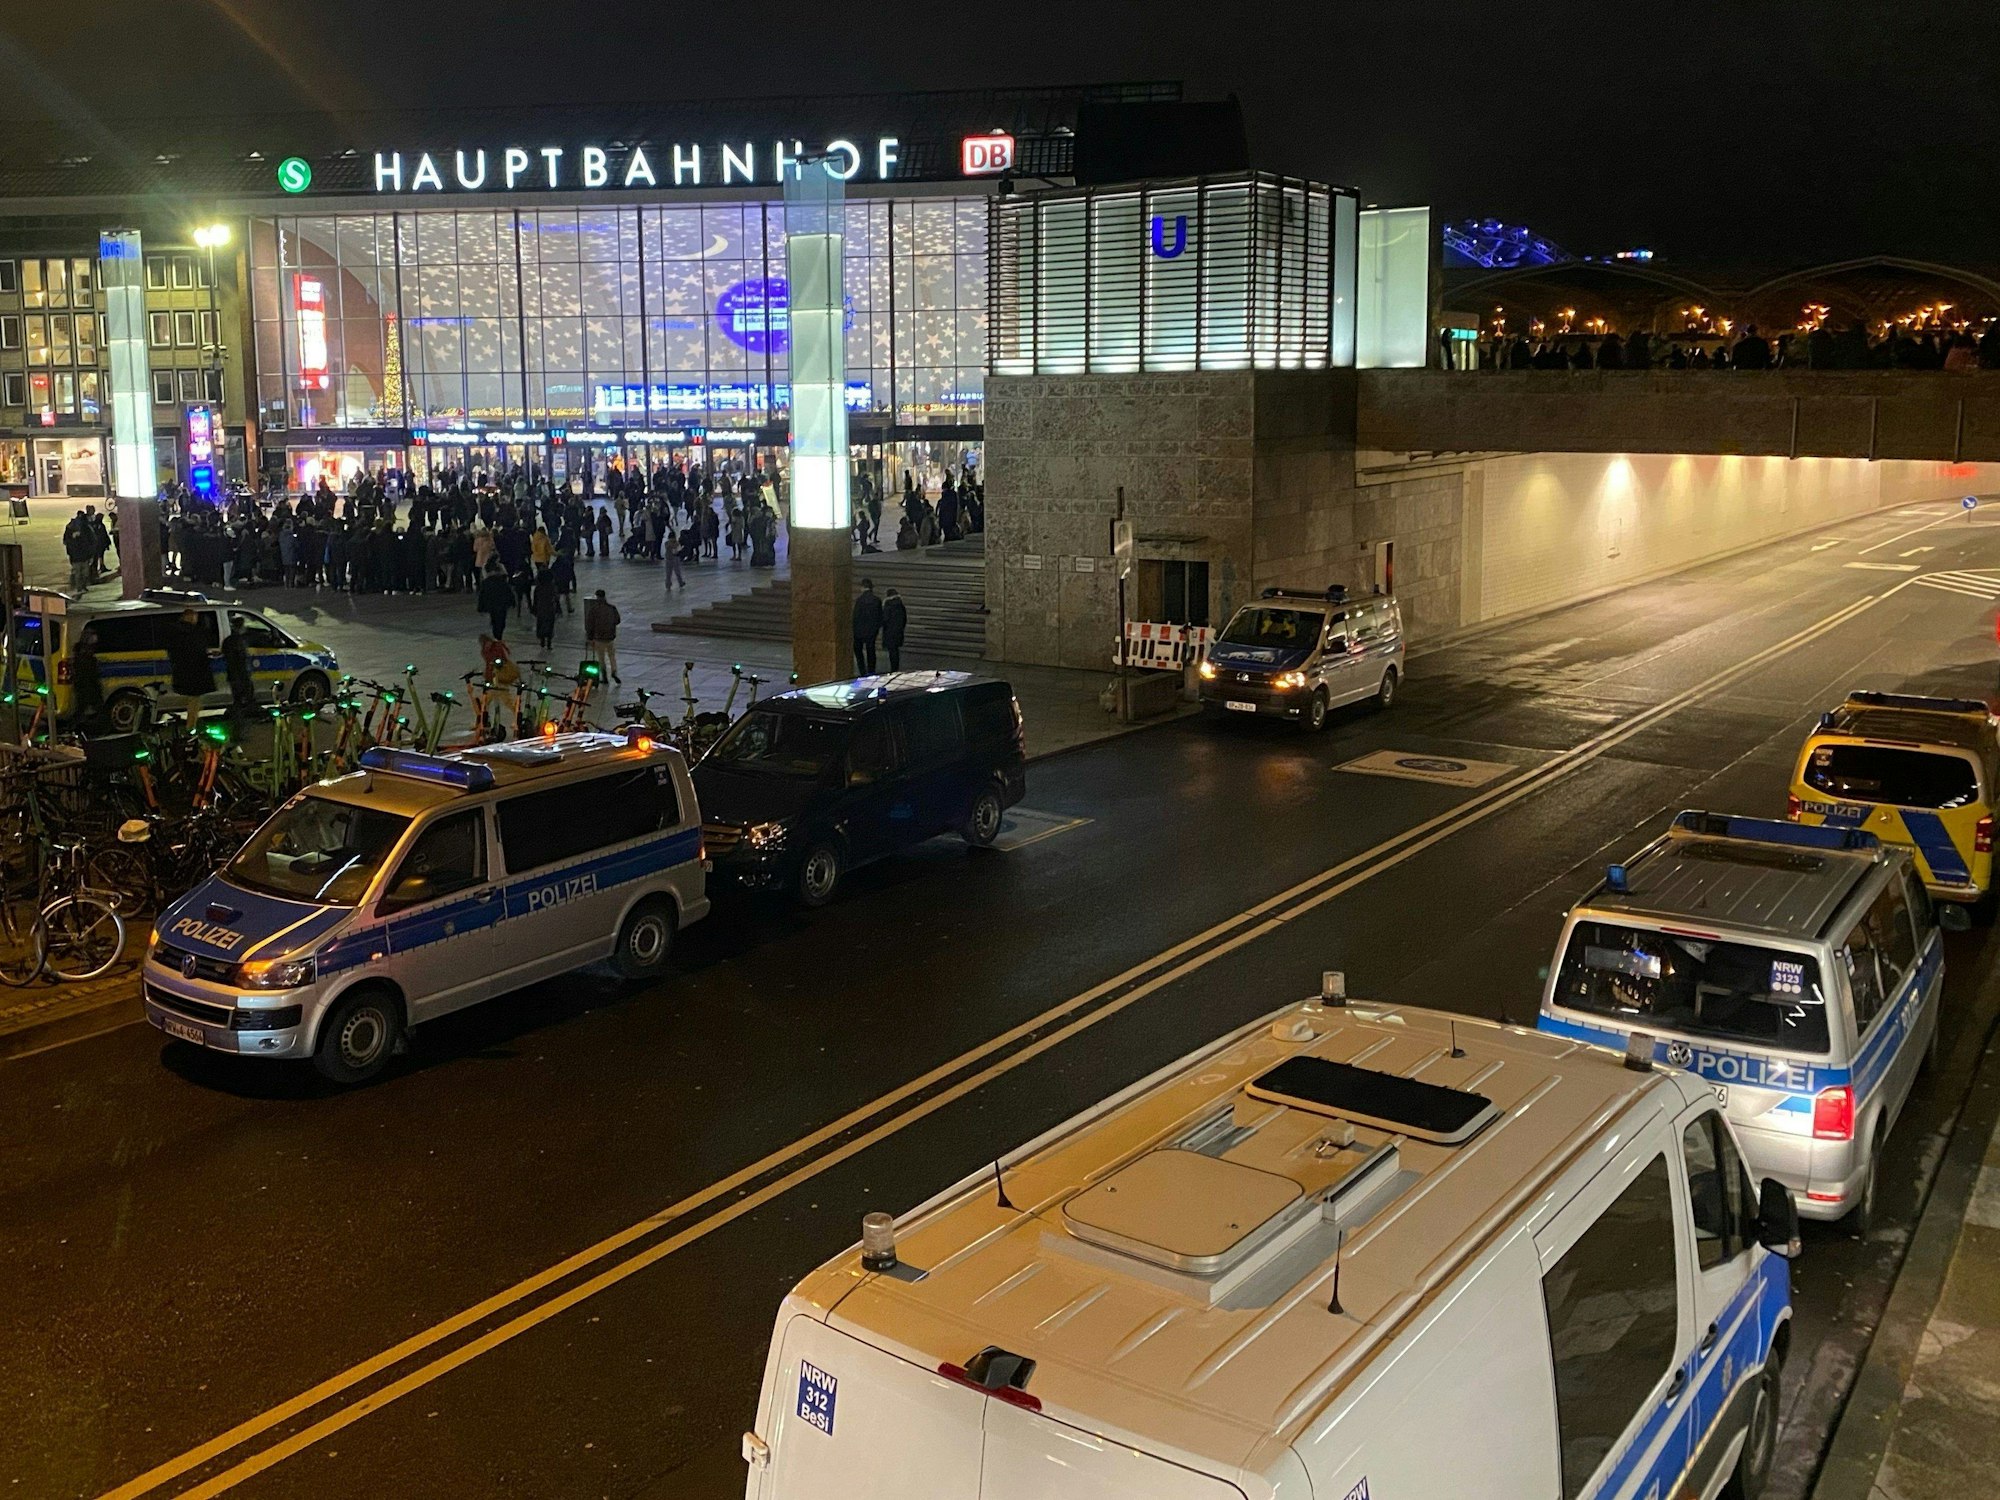 Polizisten und Einsatzfahrzeuge der Polizei stehen vor dem Hauptbahnhof.